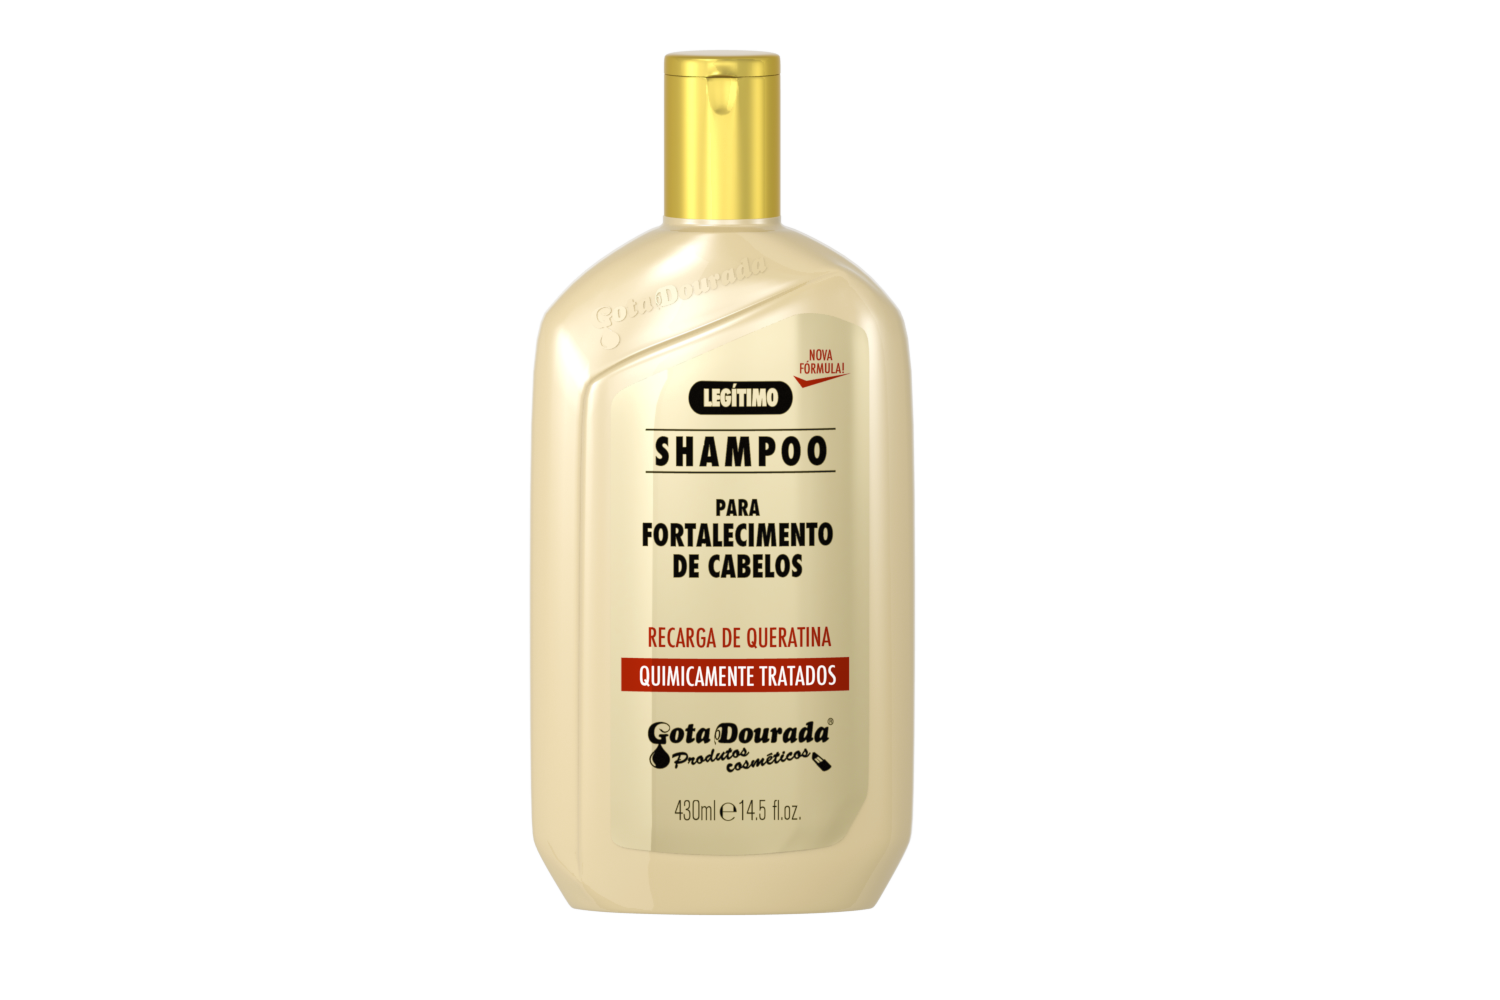 Shampoo "LEGITIMO" RECARGA DE QUERATINA 430ml